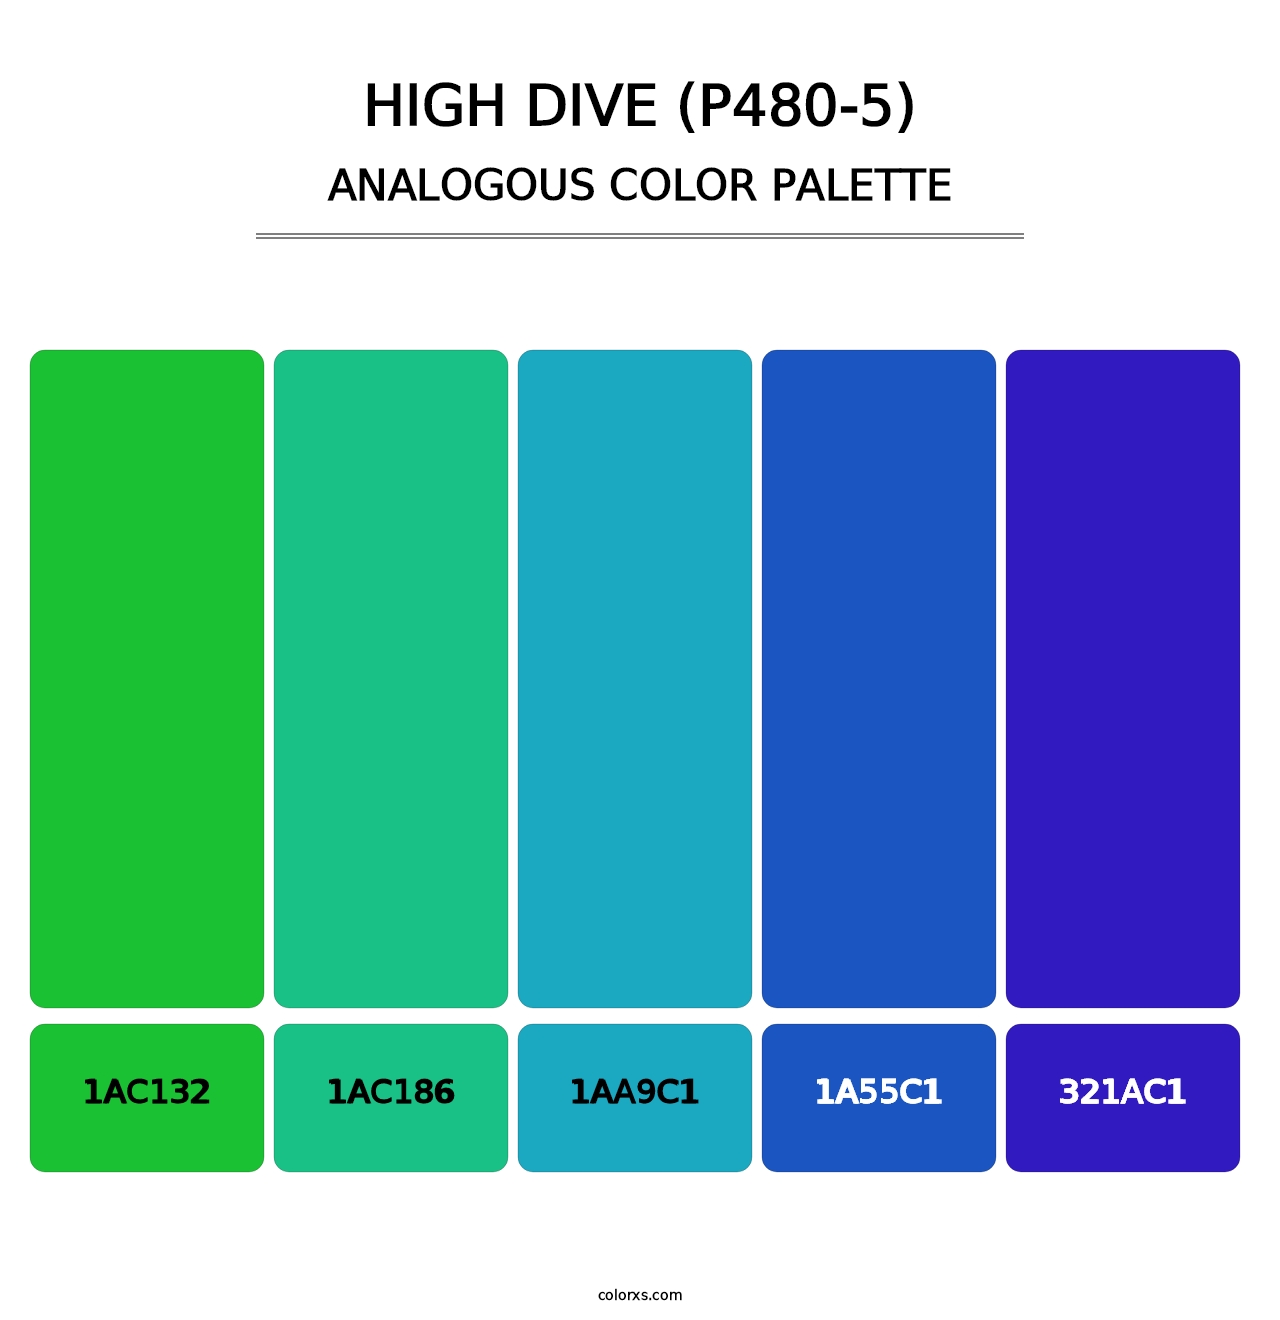 High Dive (P480-5) - Analogous Color Palette